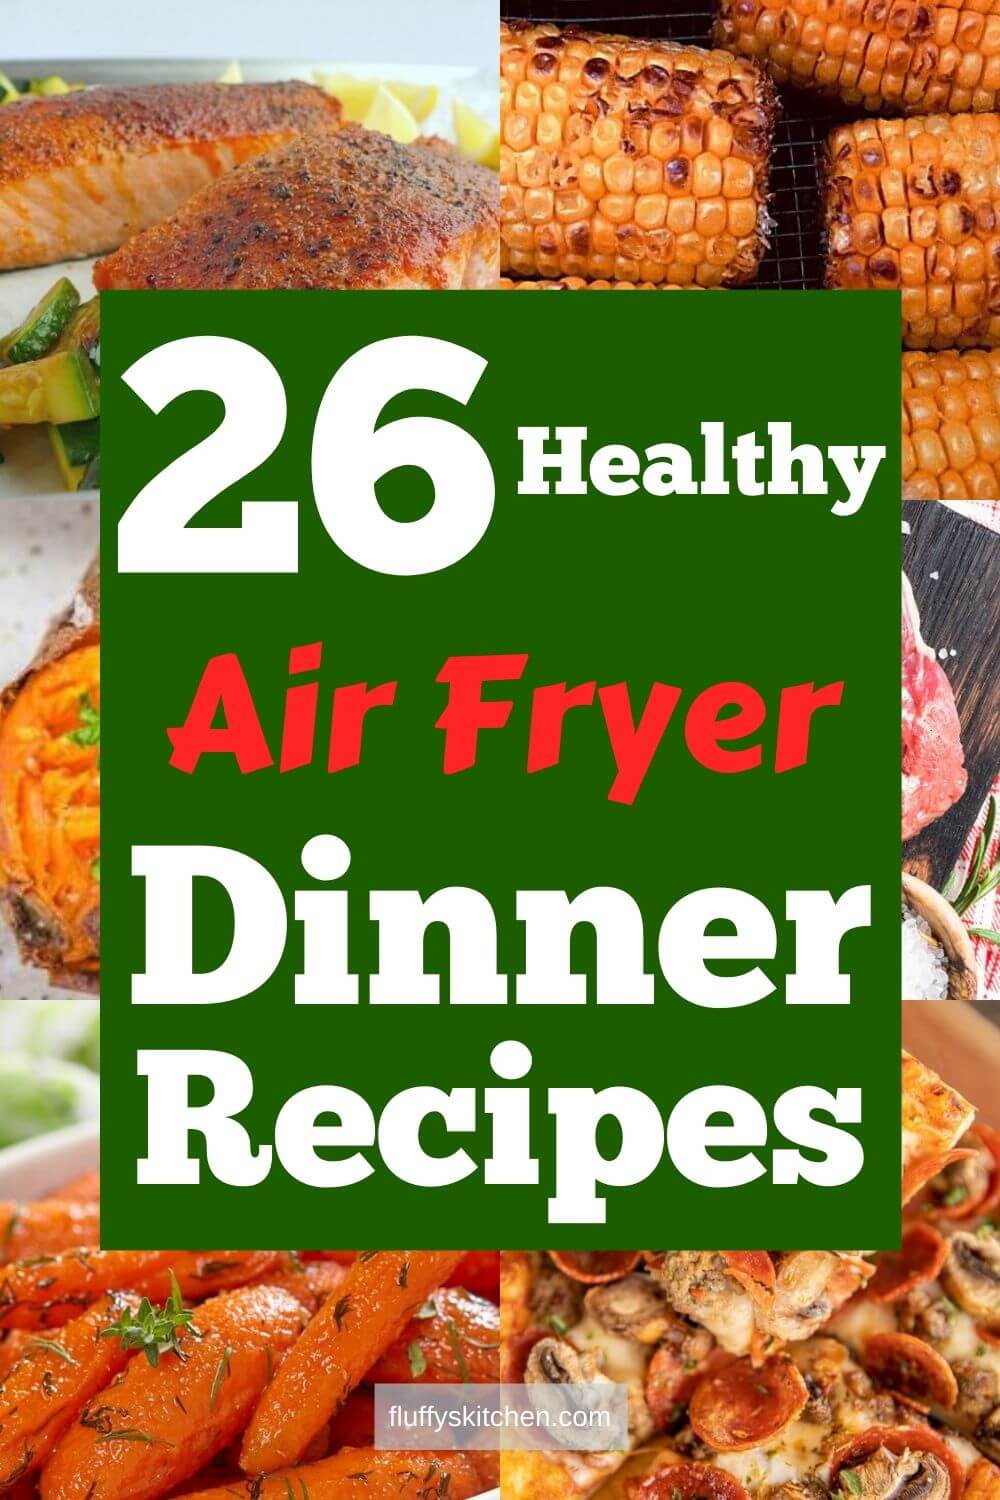 https://fluffyskitchen.com/wp-content/uploads/2020/01/26-Healthy-Air-Fryer-Dinner-Recipes.jpg